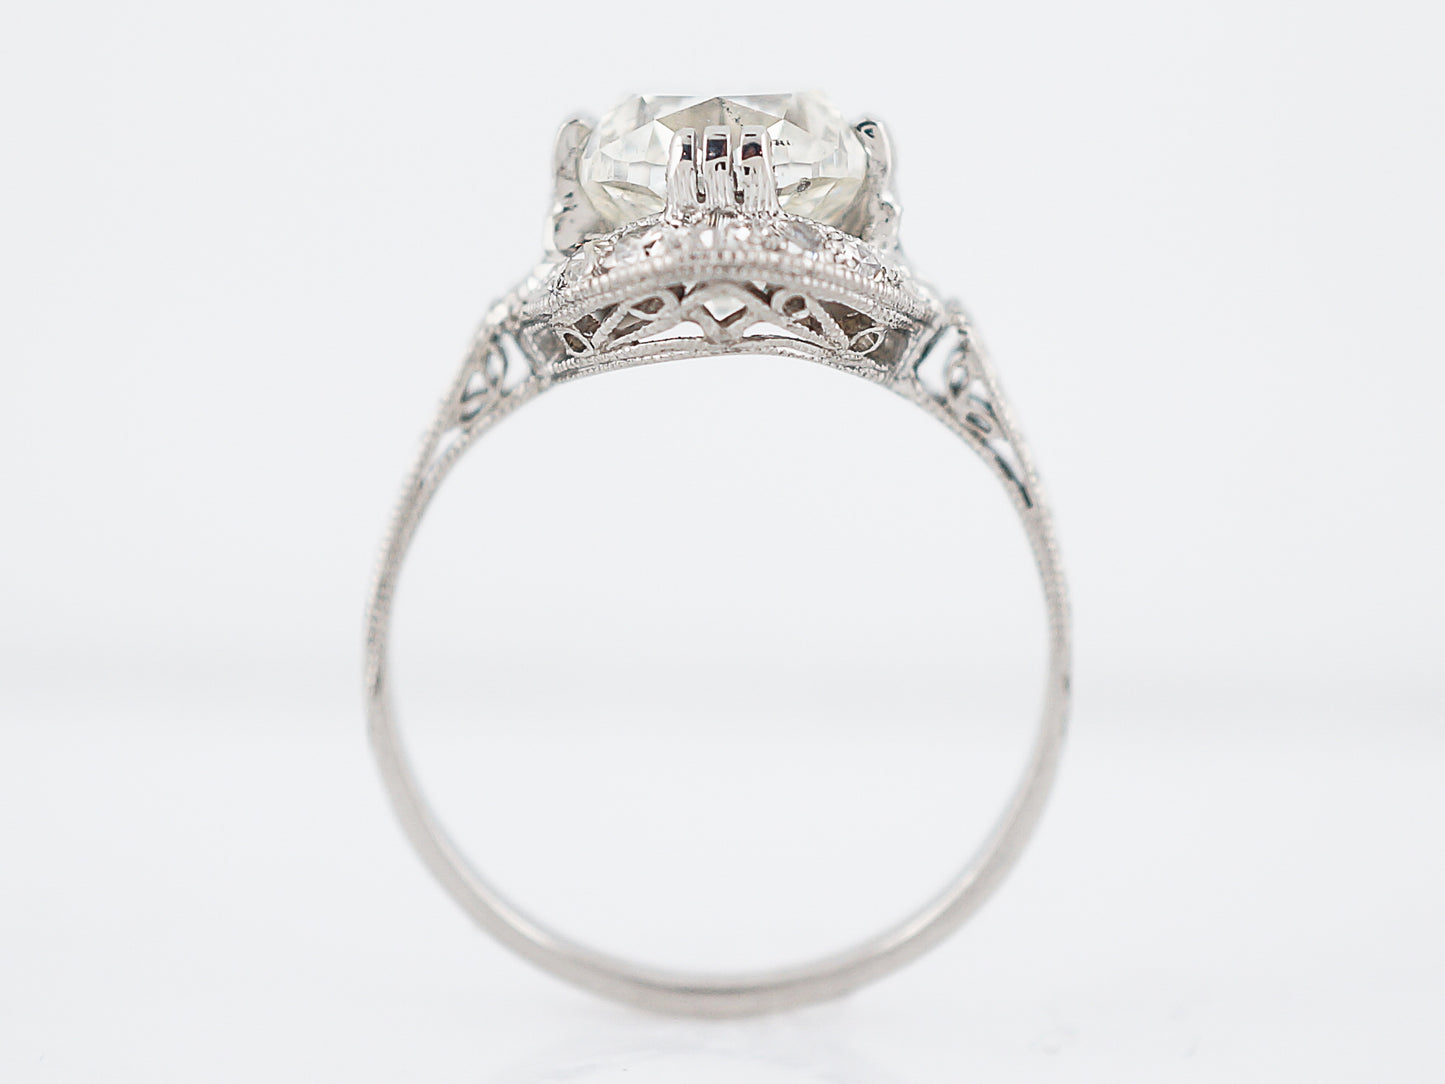 Antique Engagement Ring Art Deco 2.83 Cushion Cut Diamond in Platinum